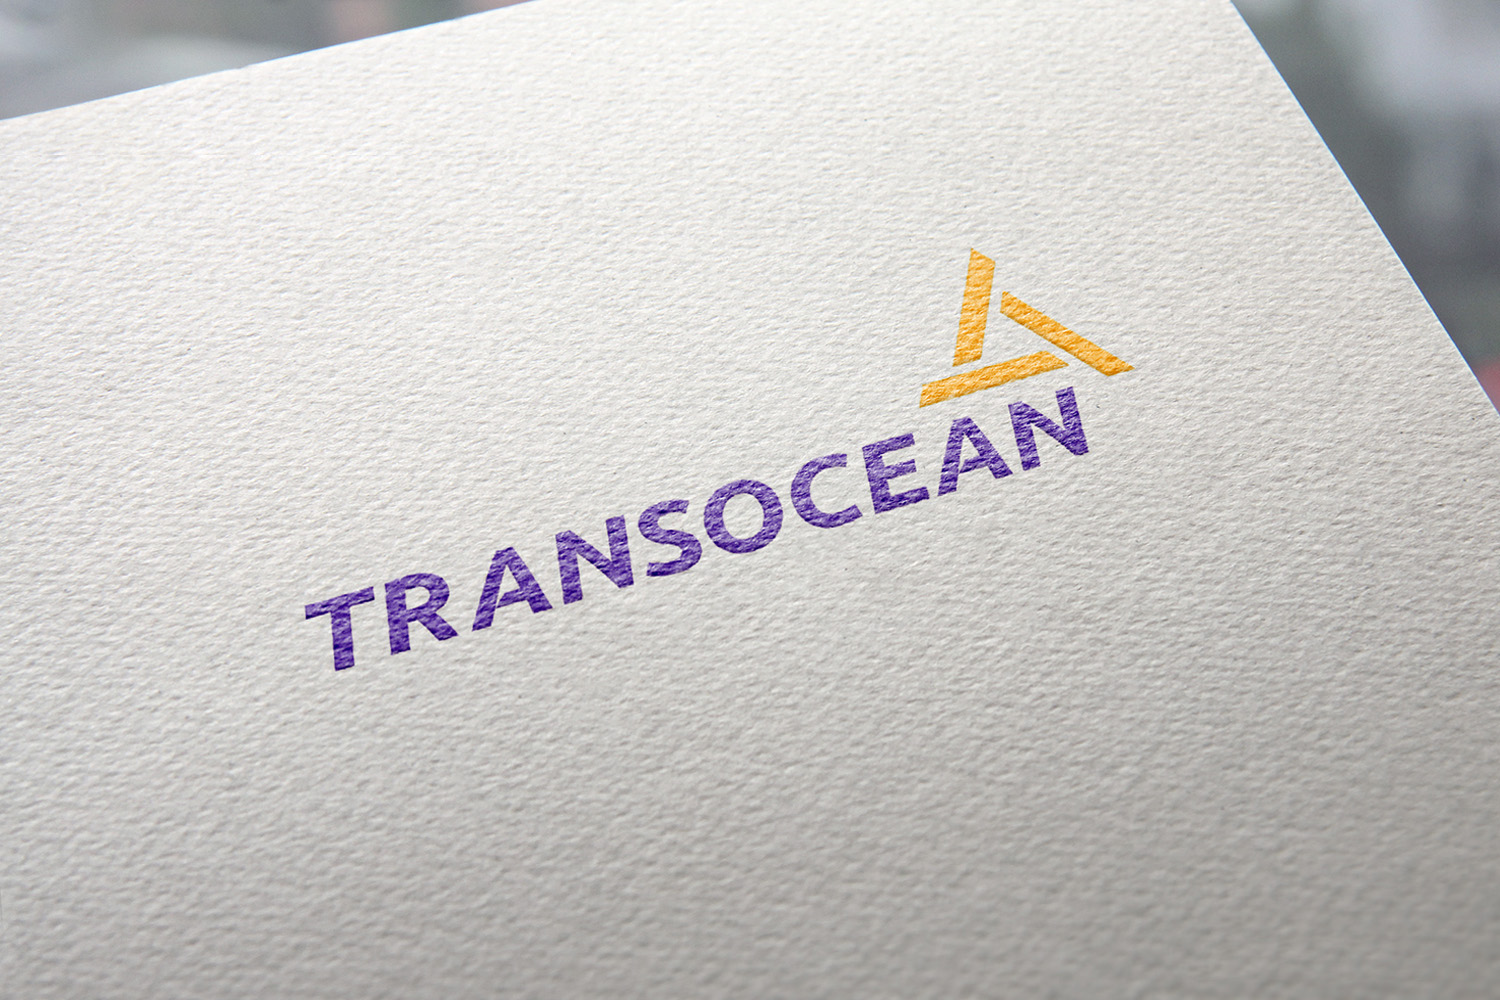 Thiết kế logo thương hiệu Công ty Transocean